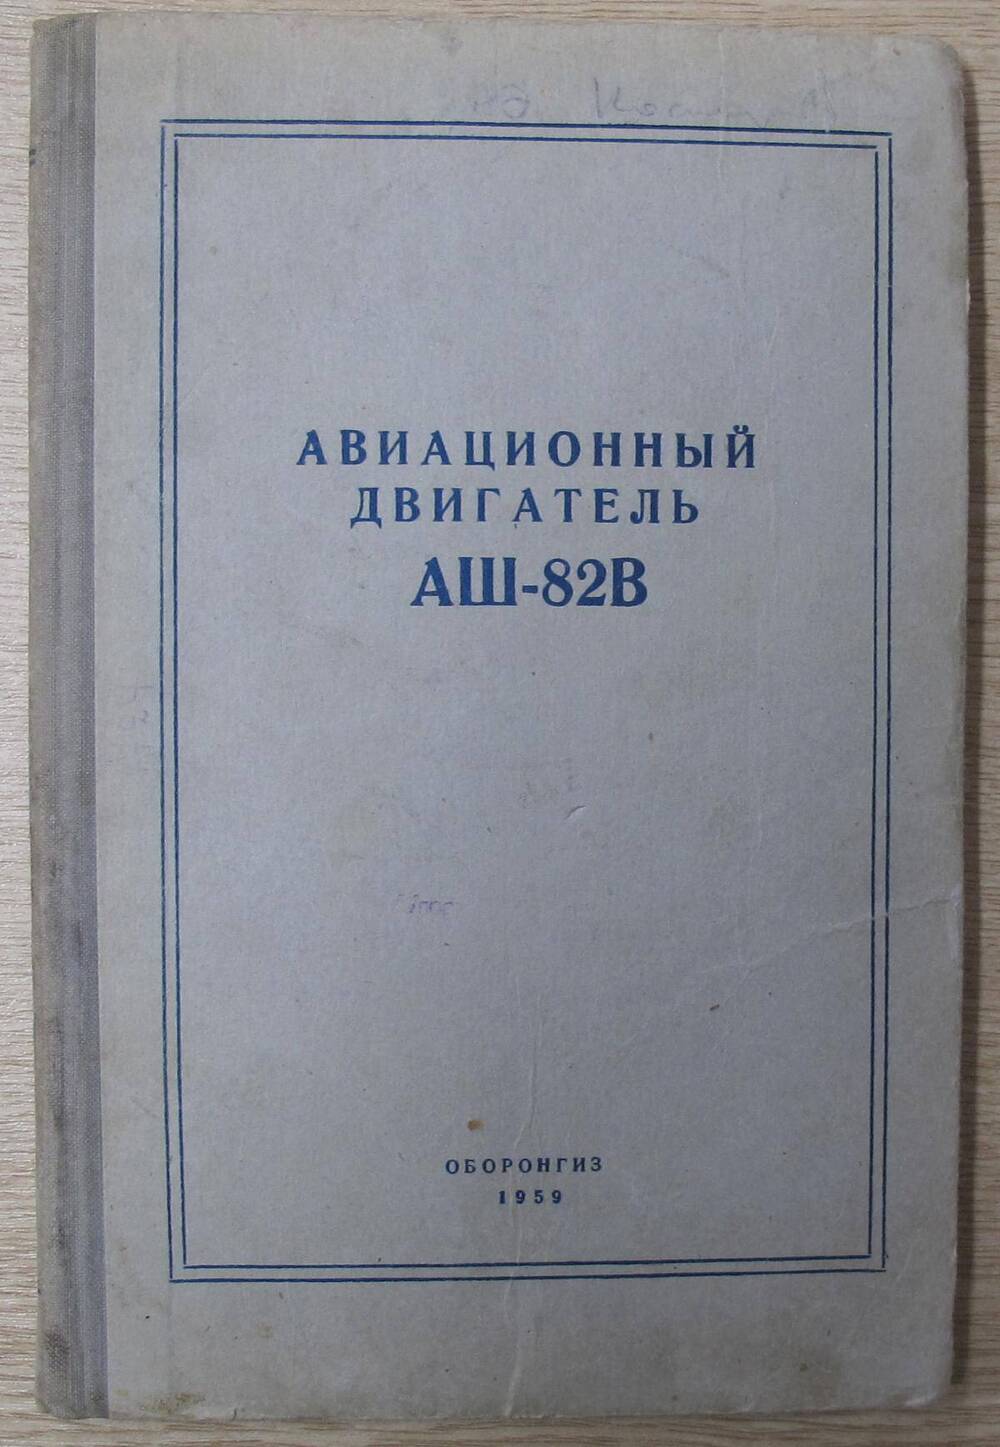 Книга Авиационный двигатель АШ-82В.